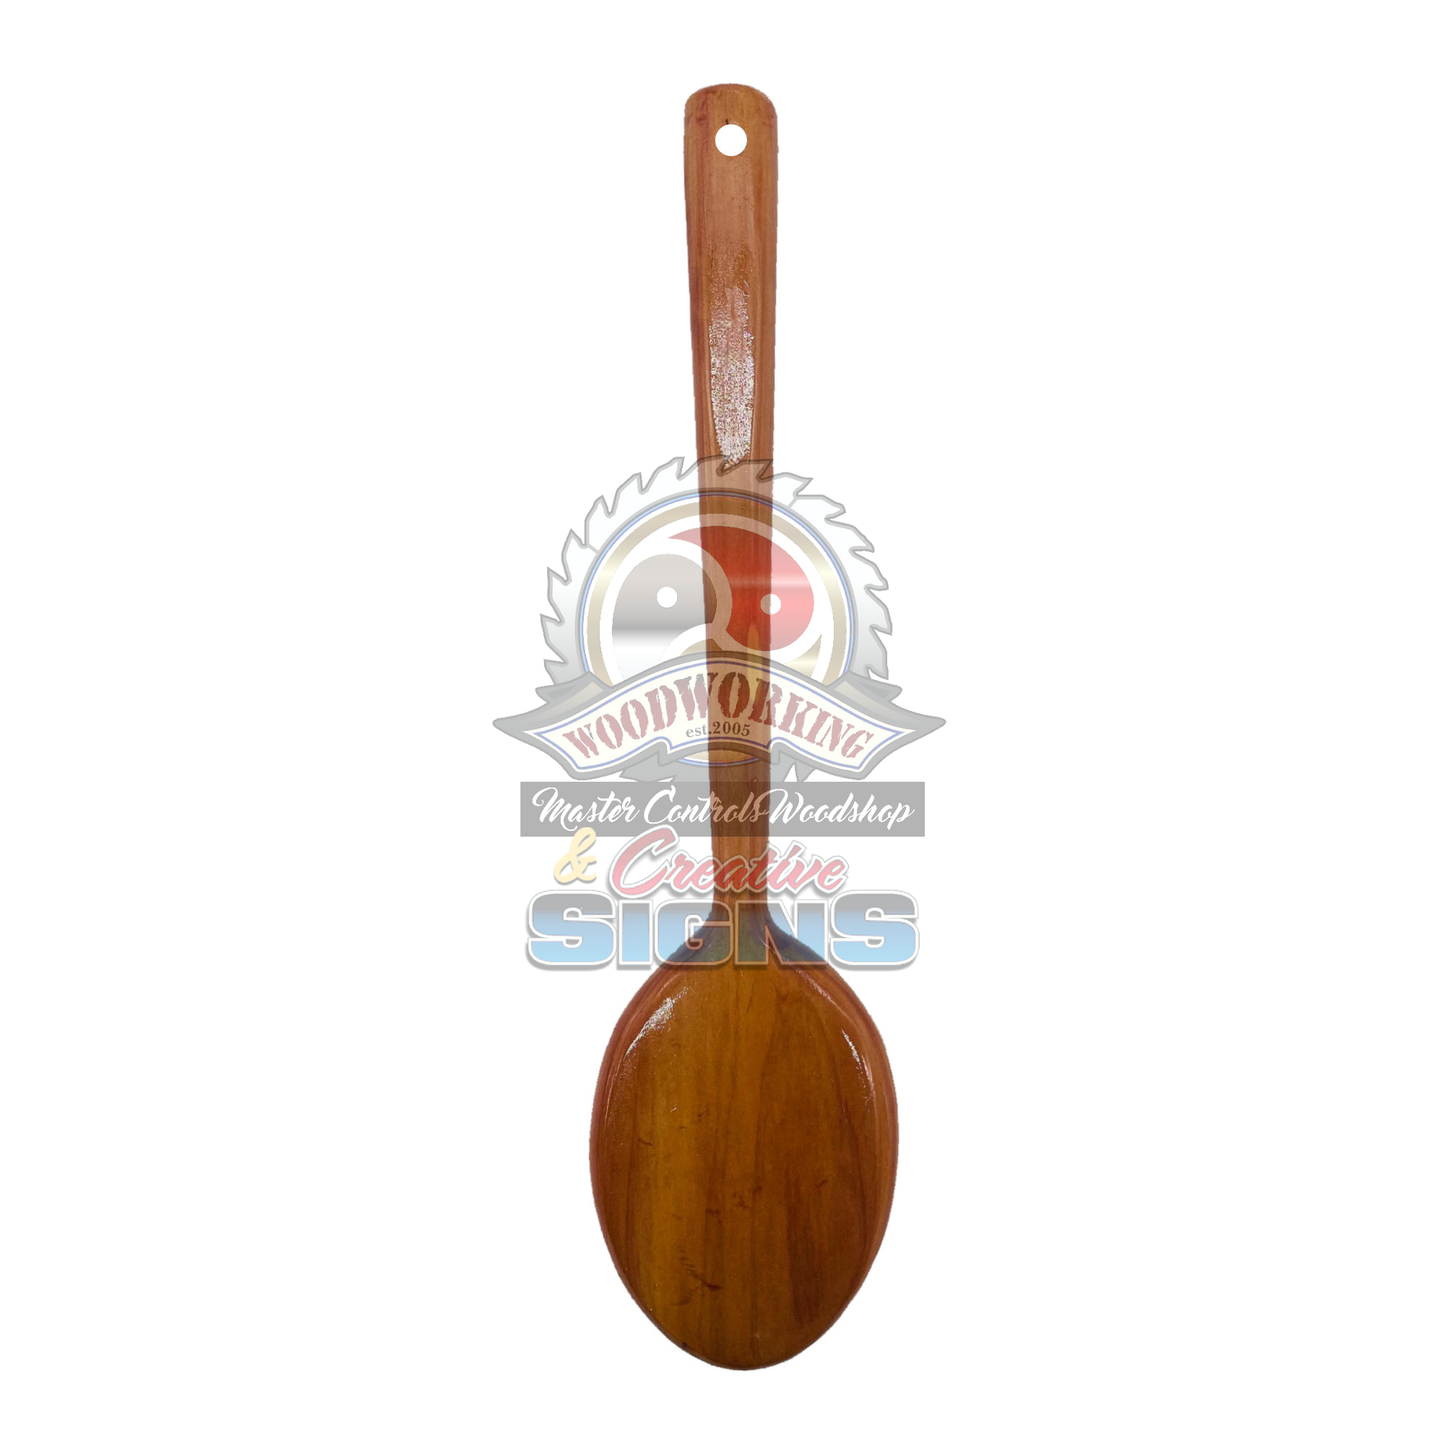 OTK SPOON Hardwood Hairbrush Spanking Paddle, hardwood paddle, wood paddle, paddle, spanking paddle, paddle, bdsm, impact, punishment, discipline